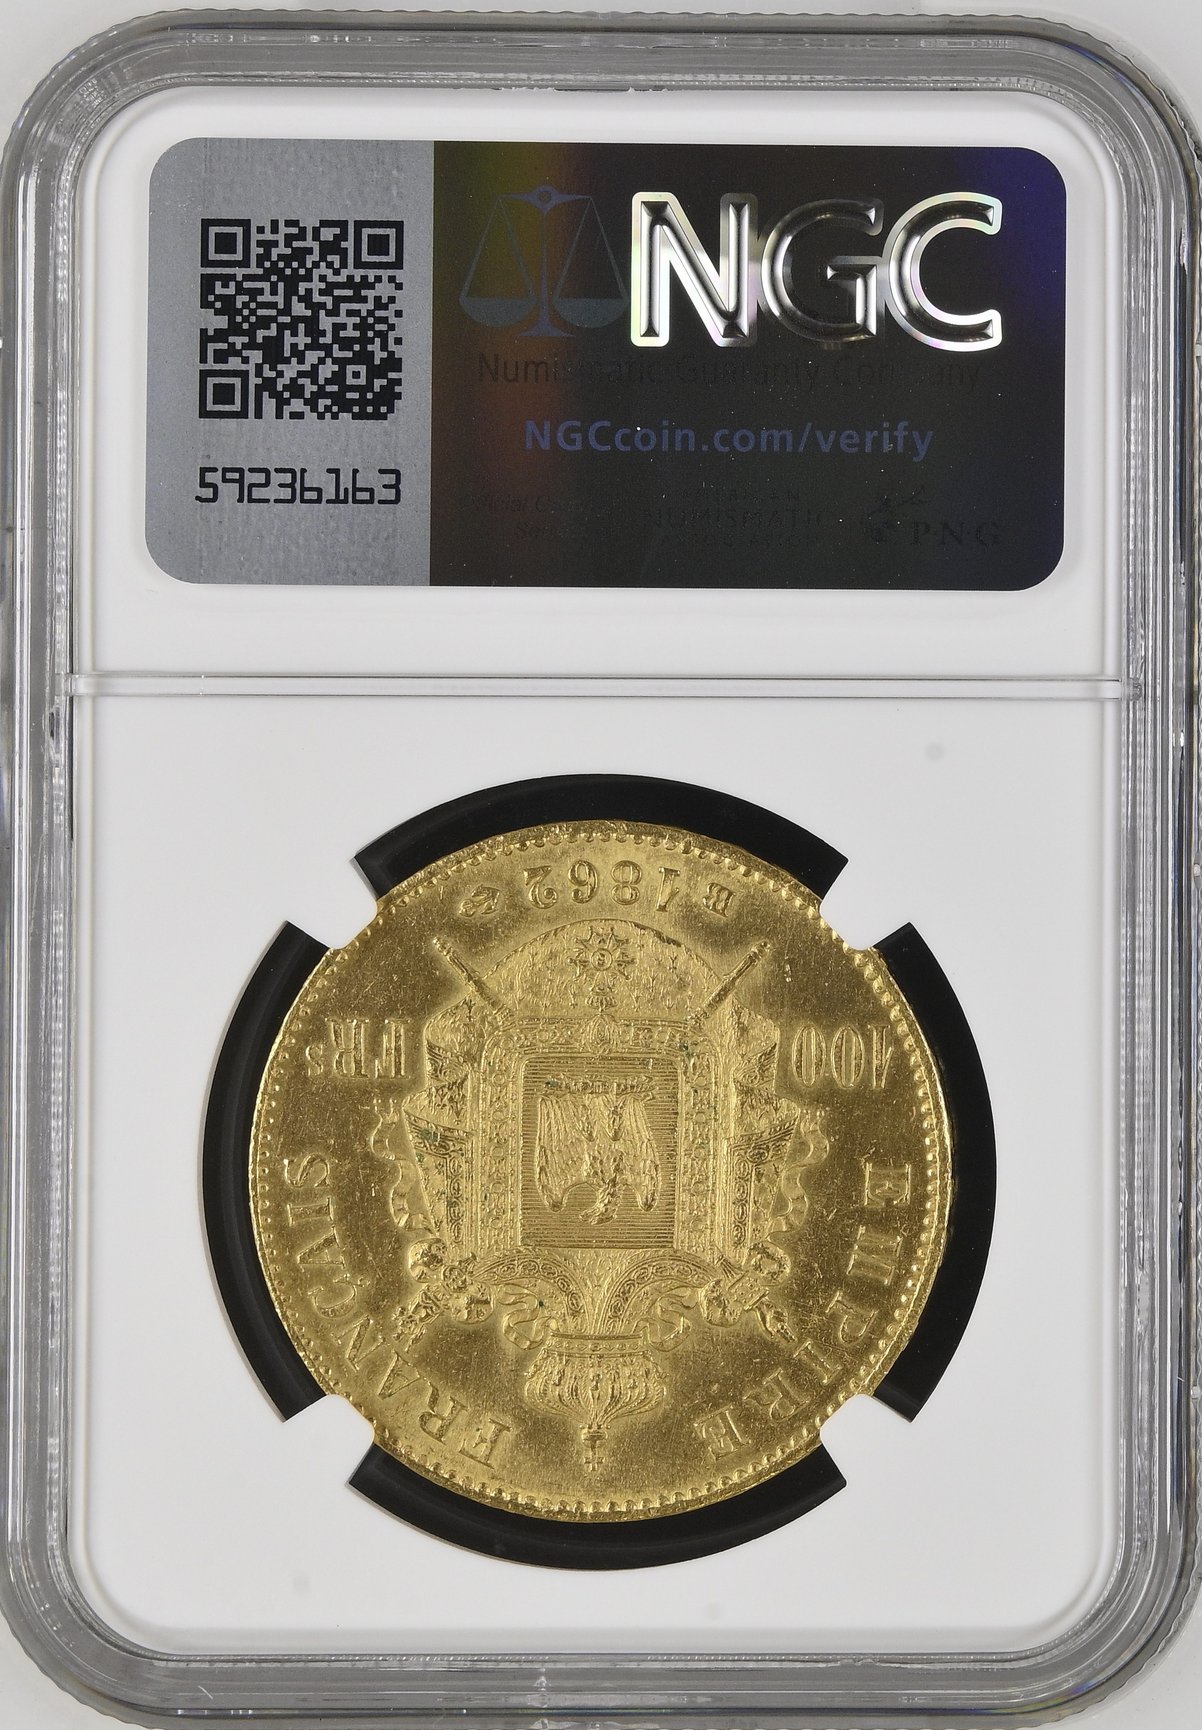 フランス1862年ナポレオン100フラン金貨NGC MS62+画像